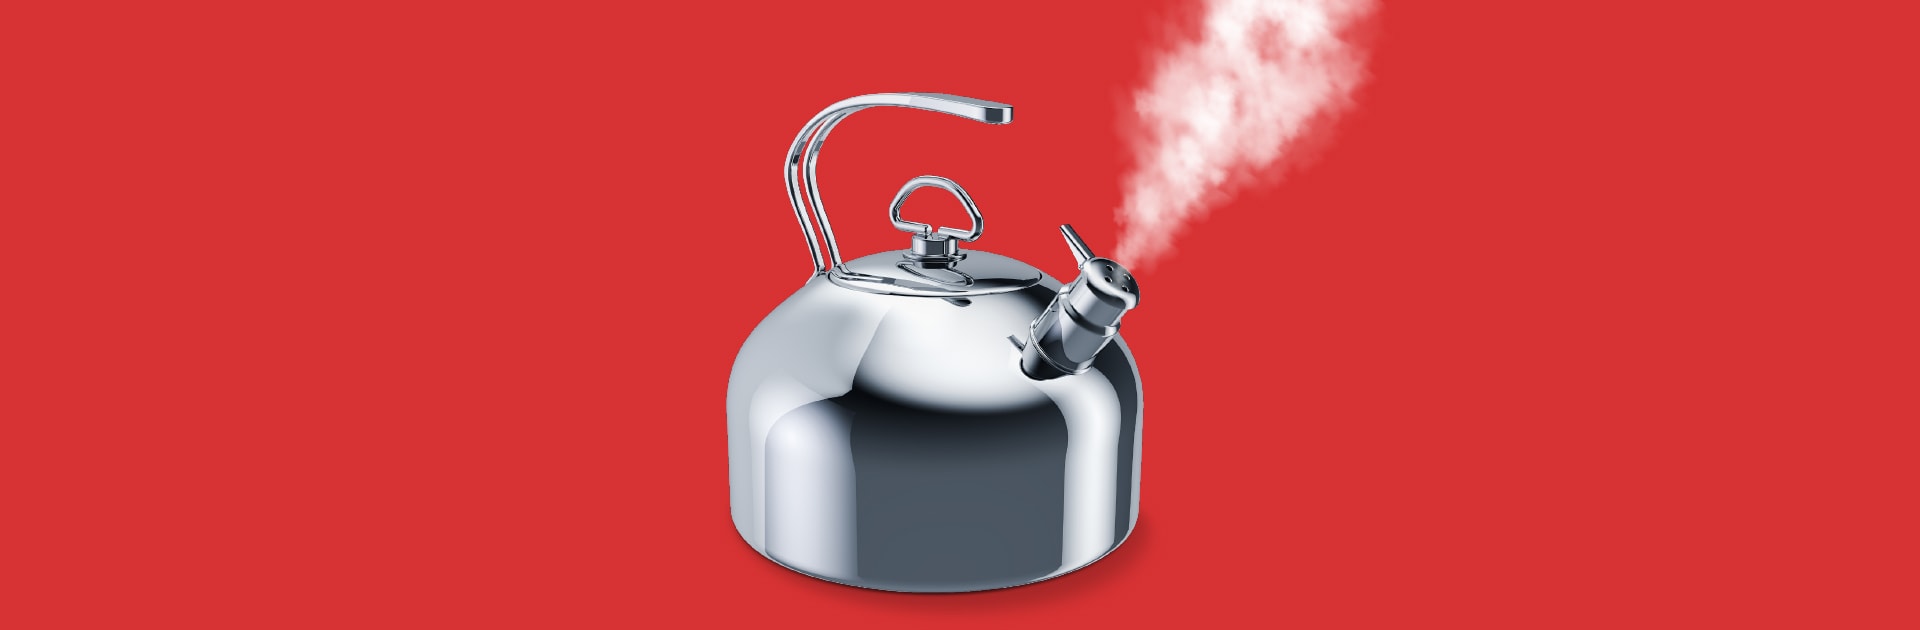 Ein Teekessel aus grauem Aluminium befindet sich auf rotem Grund. Aus der Dampföffnung des Kessels schießt weißer Dampf.